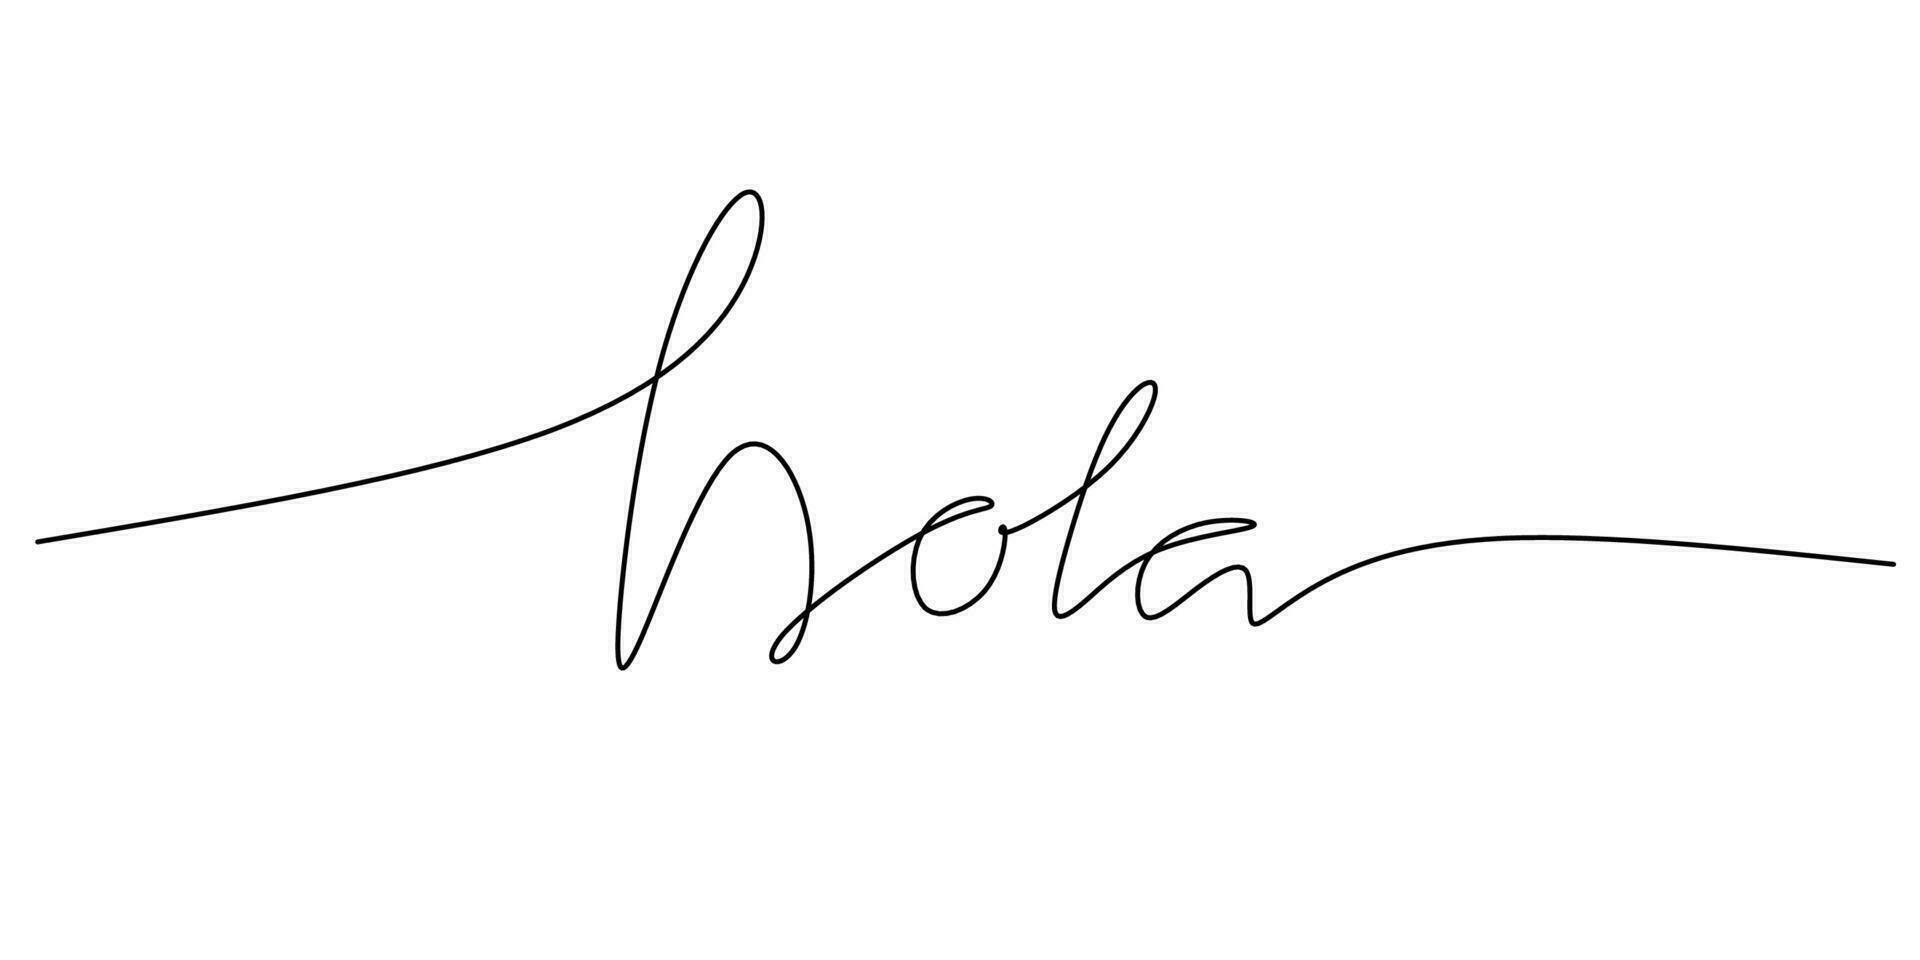 een doorlopend lijn tekening typografie lijn kunst van Hallo woord schrijven vector